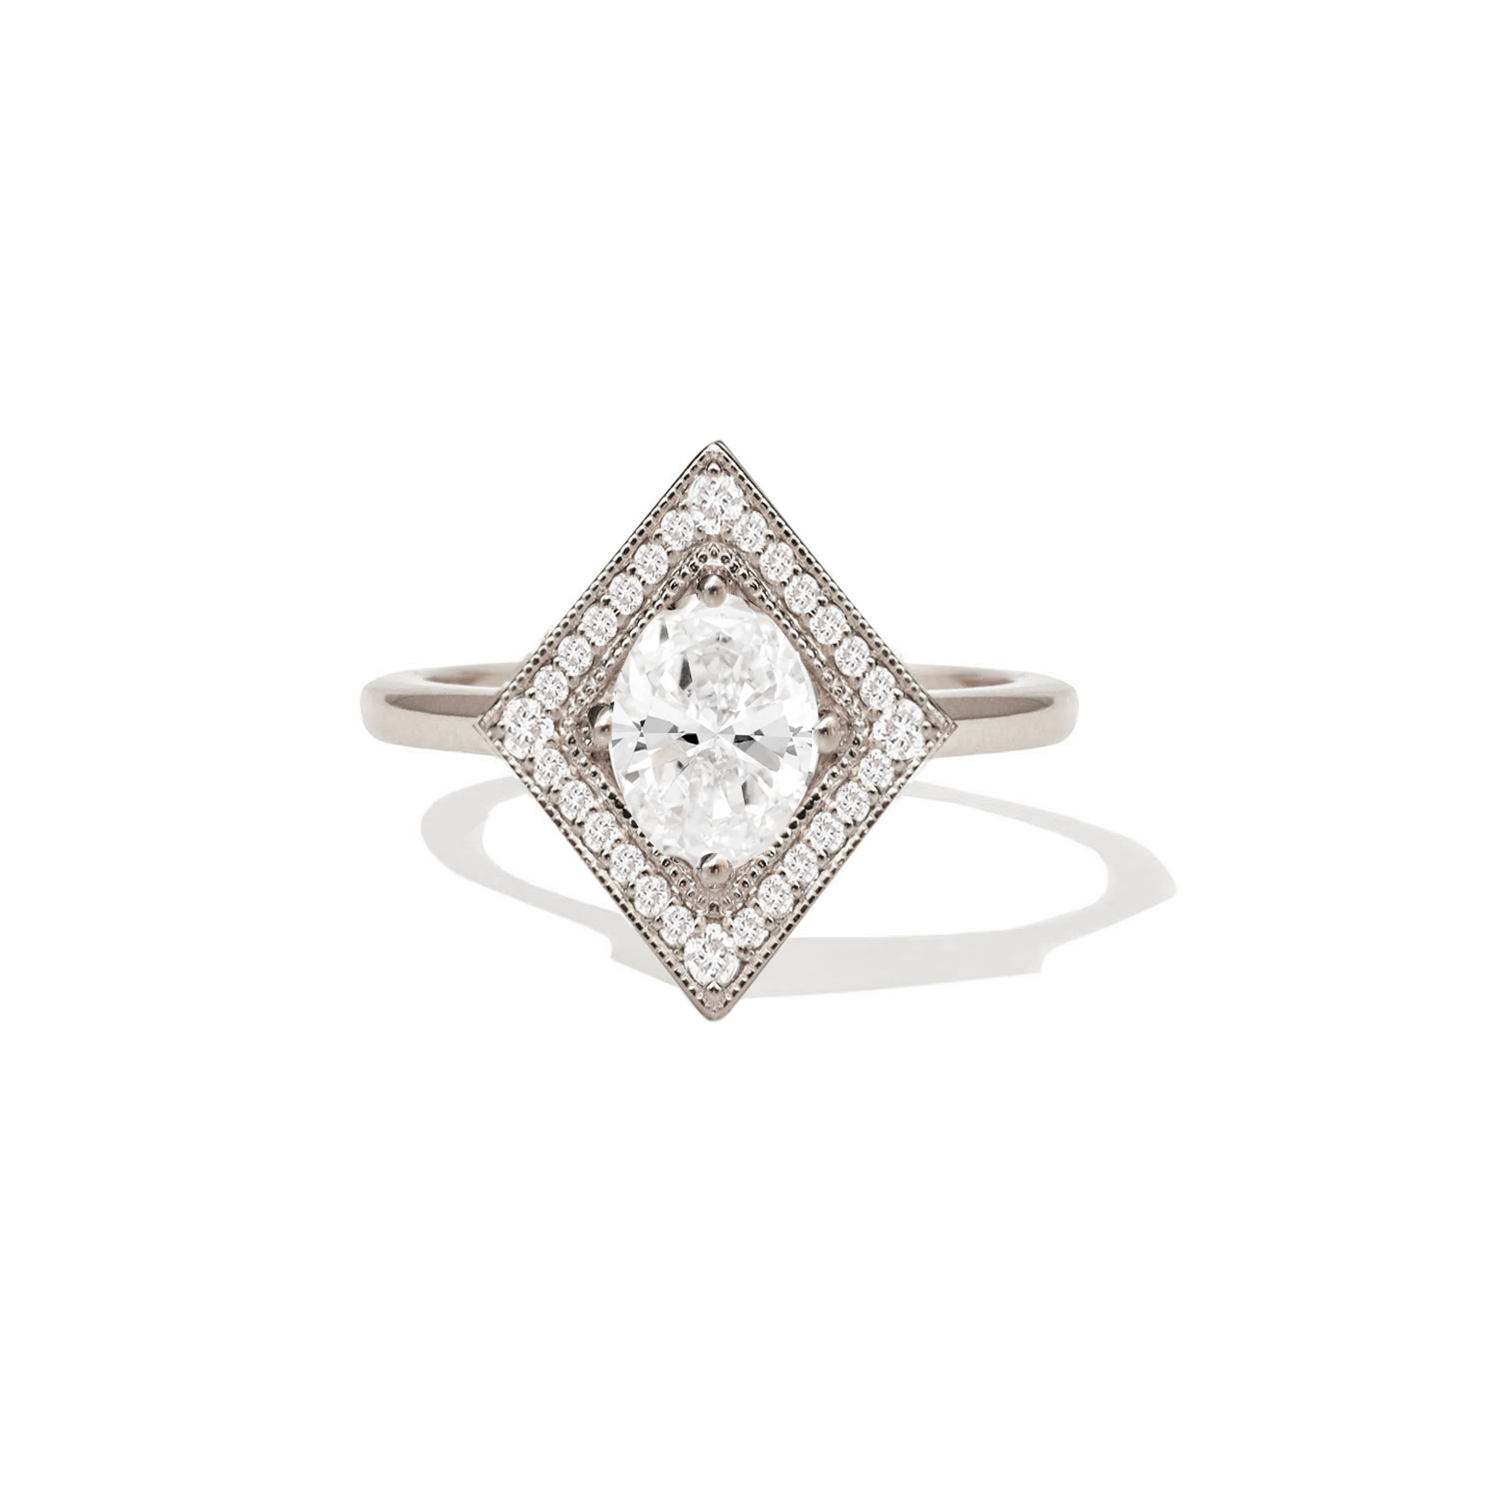 Chiếc nhẫn kim cương hình oval đẹp mắt này sẽ khiến bạn phải ngắm nhìn lâu hơn. Hãy cùng xem hình ảnh để tìm hiểu về những đặc điểm và lợi thế của các loại nhẫn kim cương hình oval trên thị trường hiện nay.